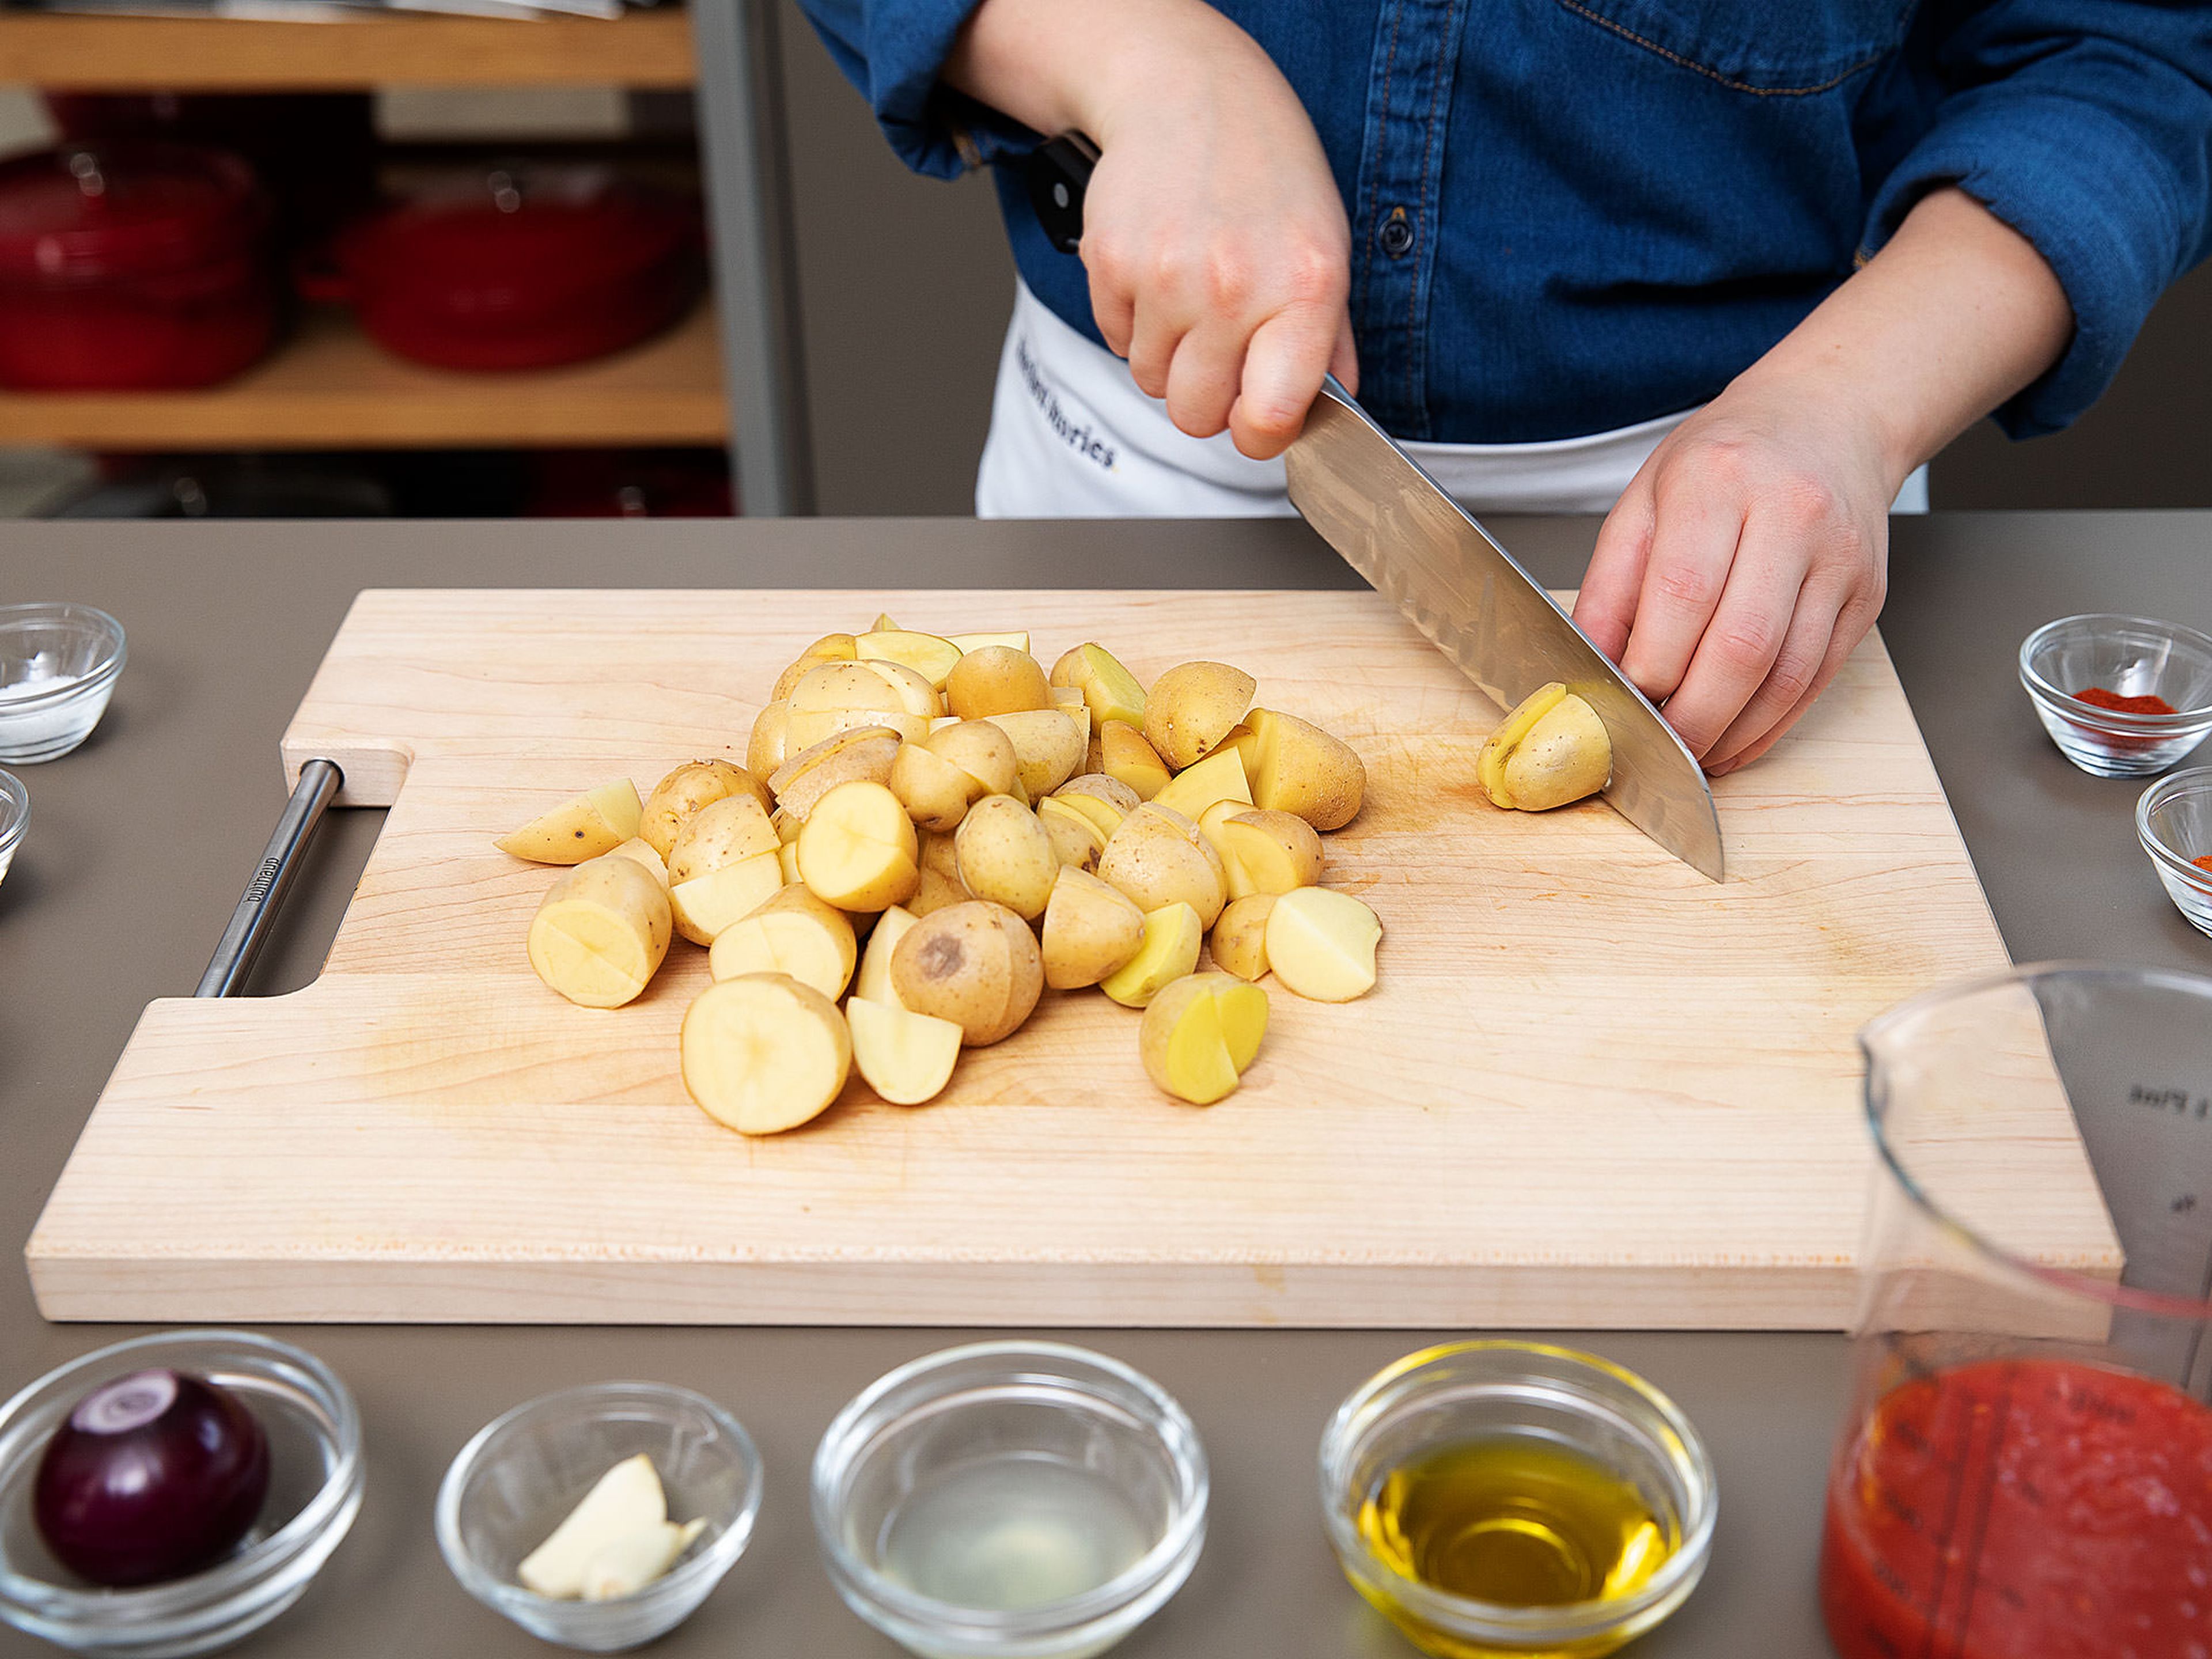 Backofen auf 200°C vorheizen. Kartoffeln in mundgerechte Stücke schneiden und in eine Schüssel geben. Einen Teil des Olivenöls, edelsüßes Paprikapulver und etwas vom geräucherten Paprikapulver dazugeben. Mit Salz würzen und alles gut vermengen.